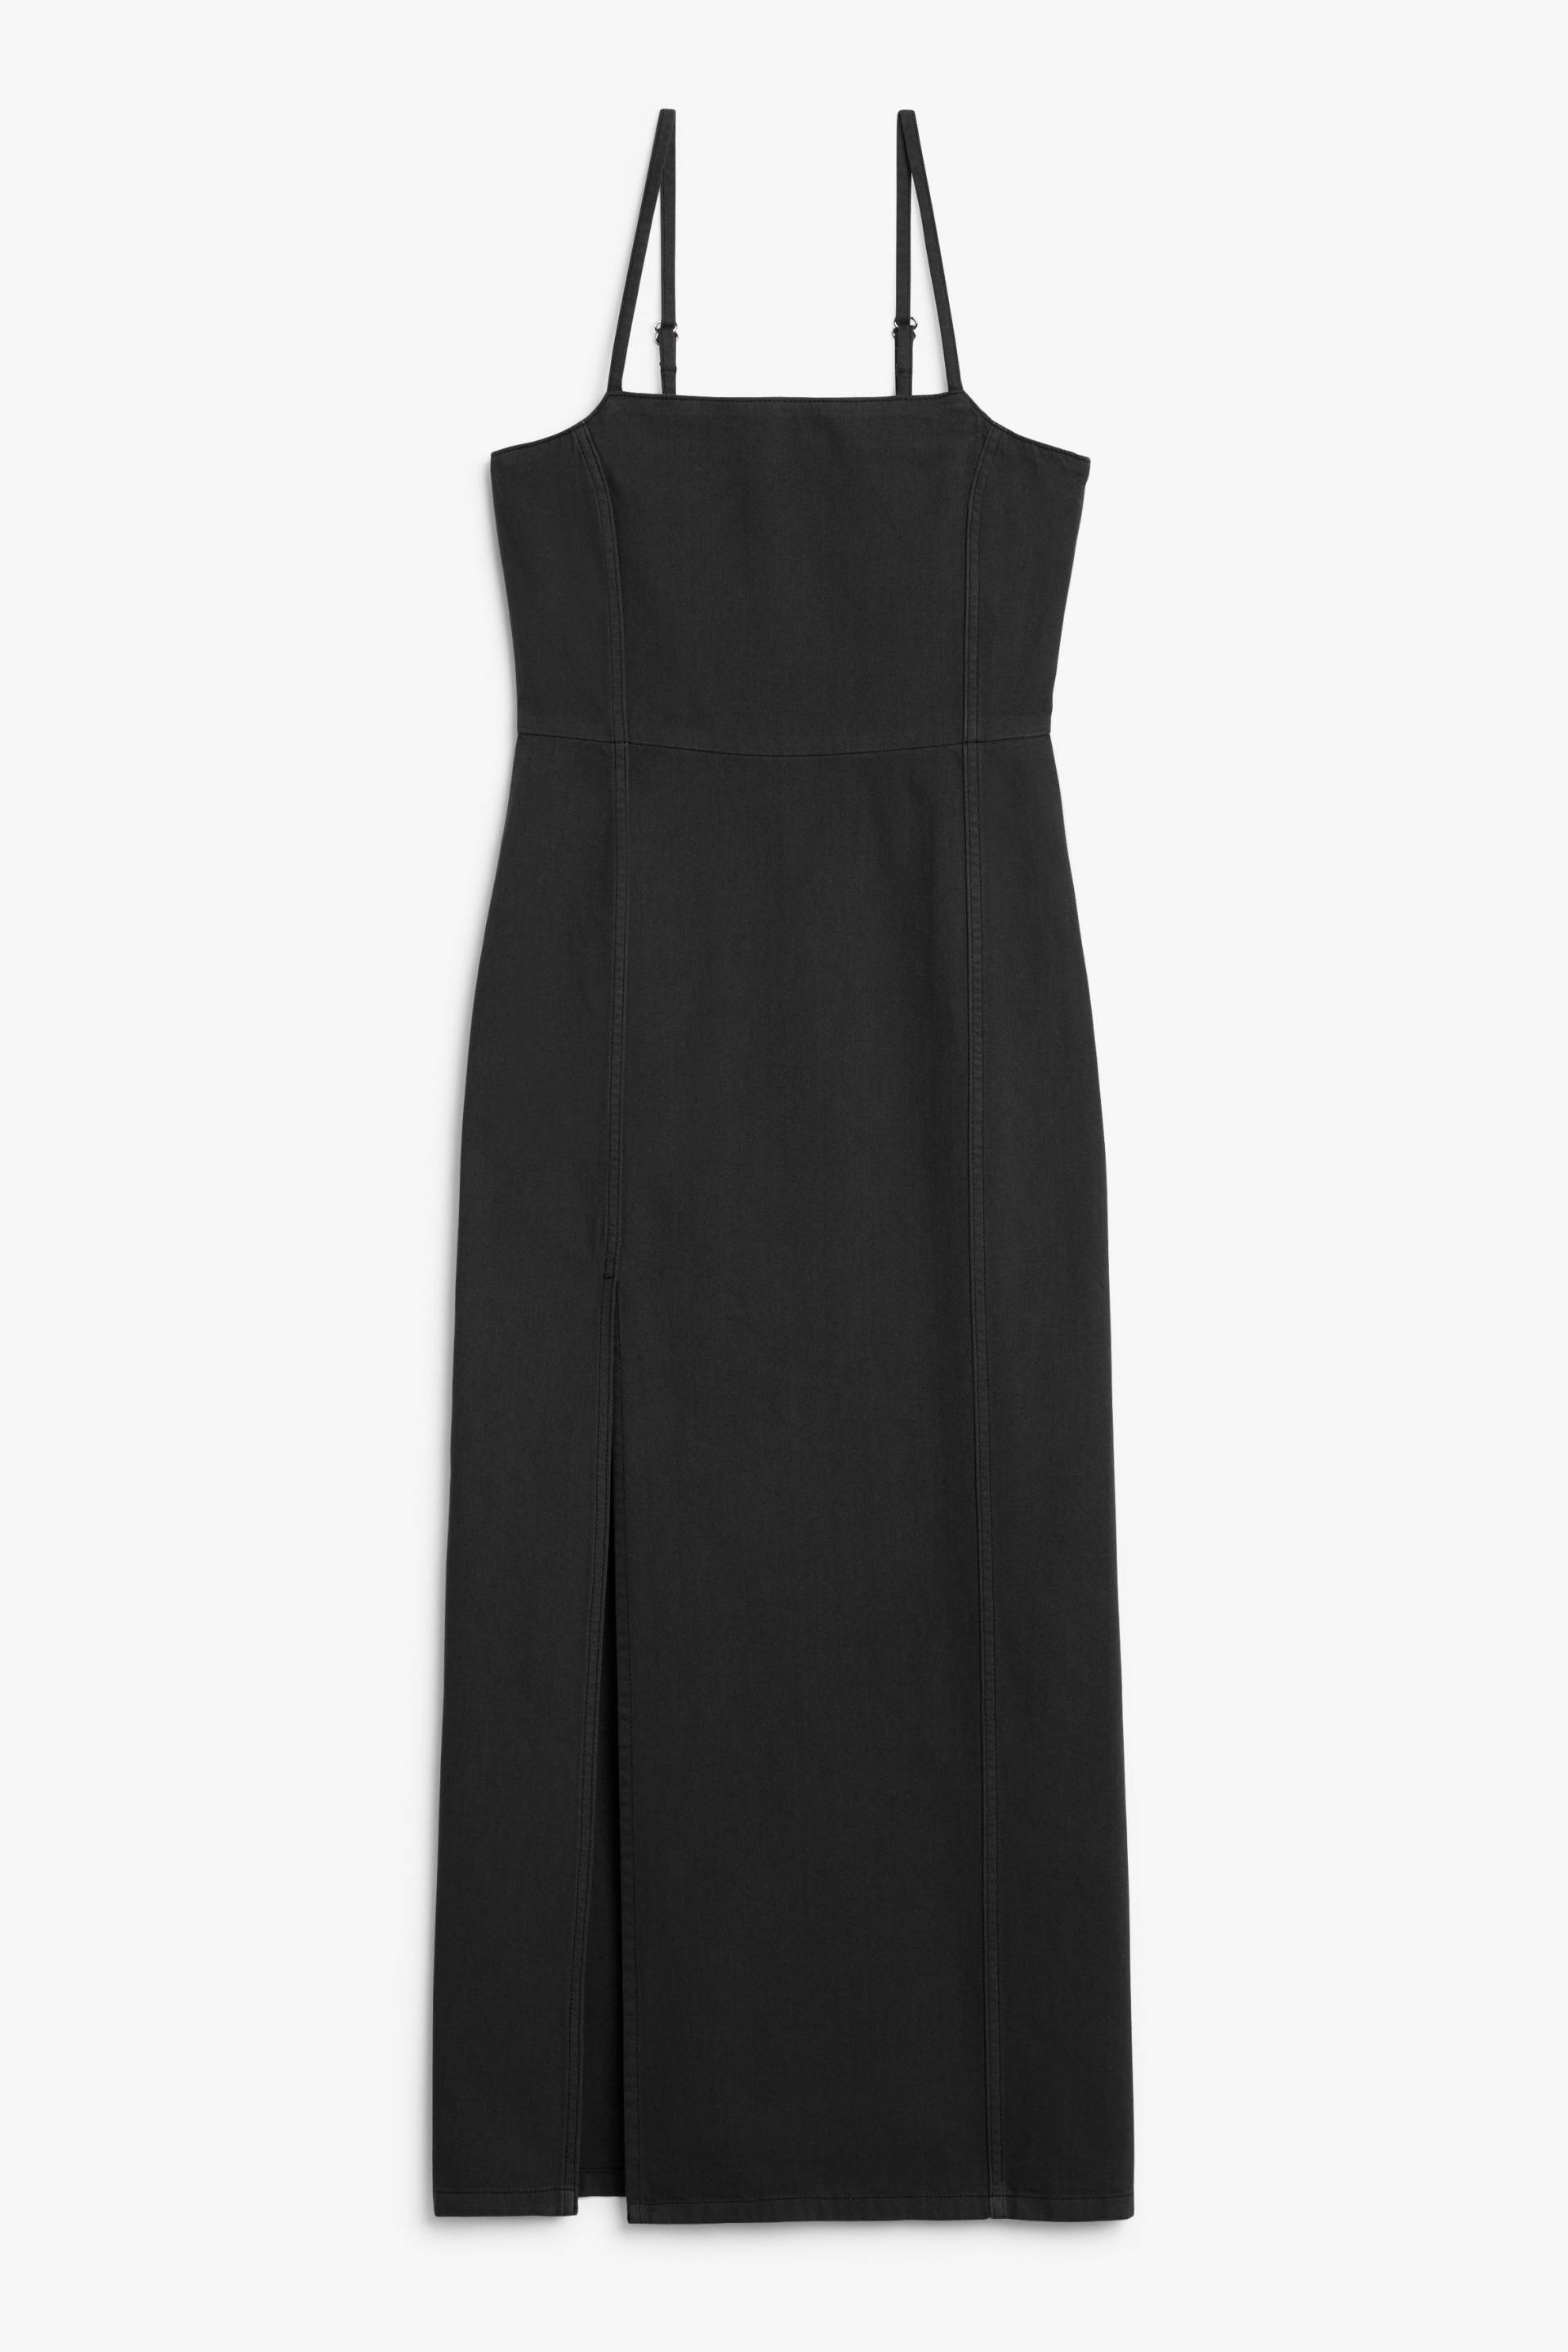 Monki Jeanskleid in Maxi-Länge mit Karree-Ausschnitt Schwarz, Alltagskleider Größe 42. Farbe: Black von Monki